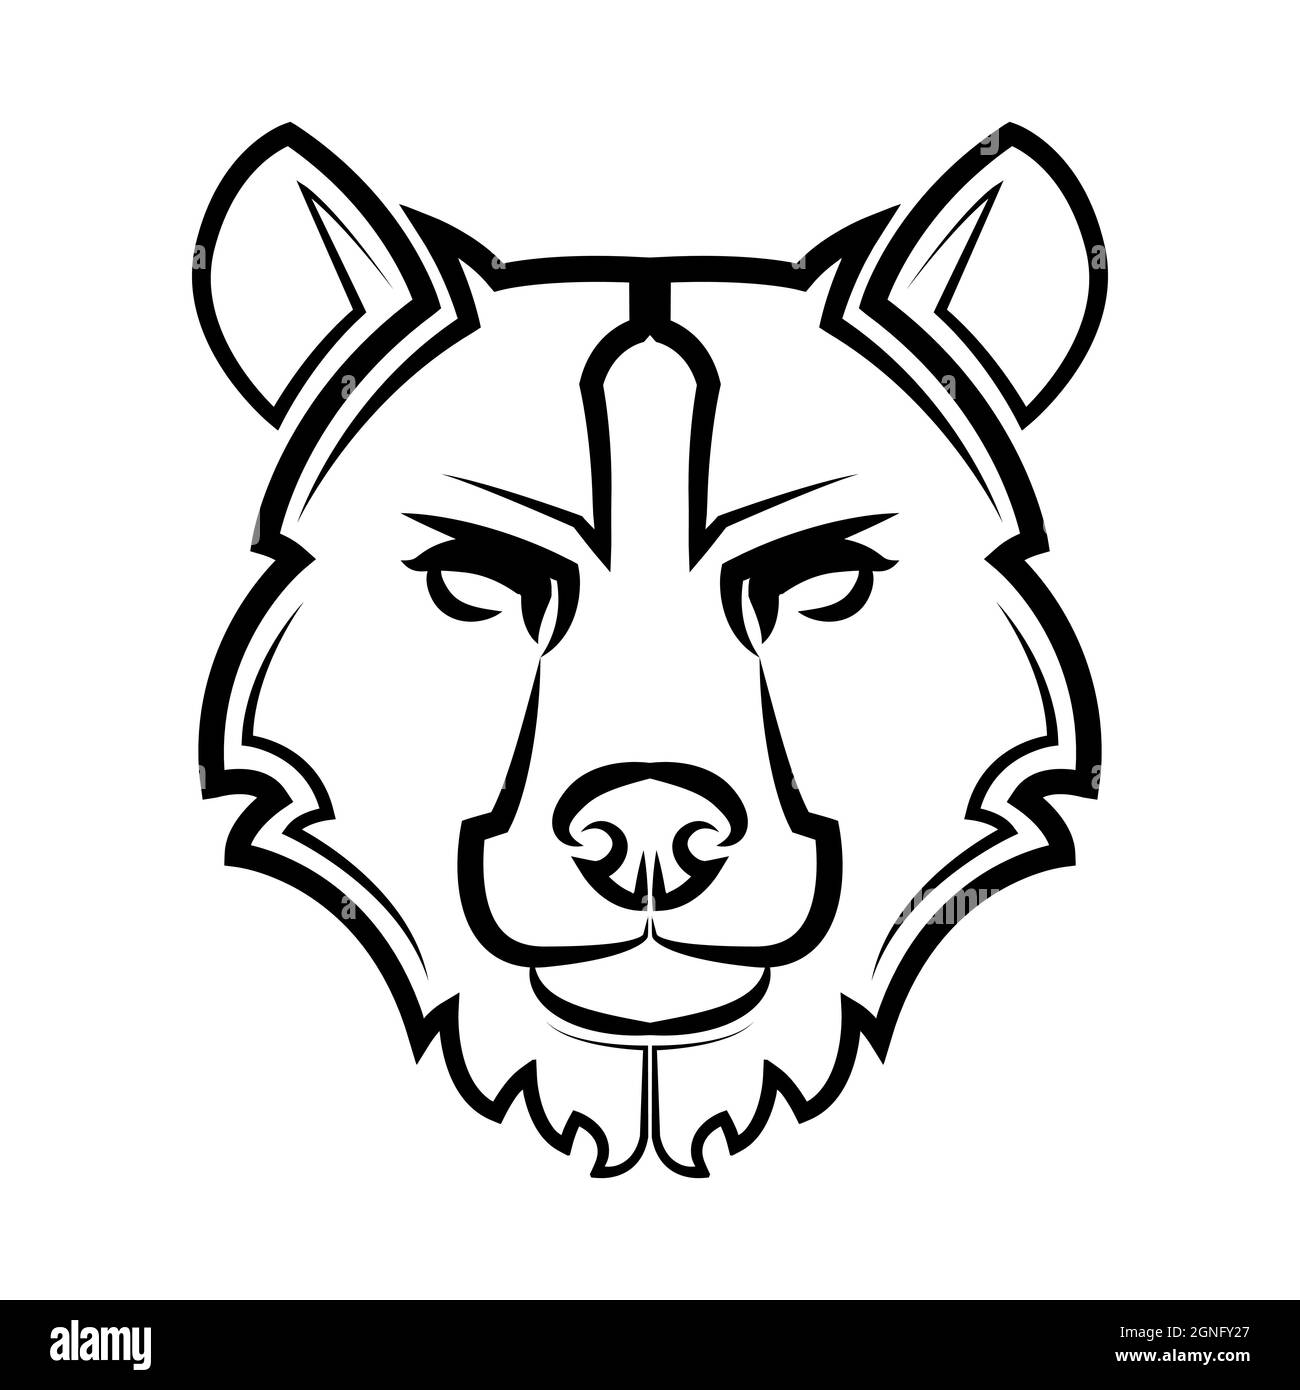 Noir et blanc ligne art de la tête d'ours bonne utilisation pour symbole mascotte icône avatar tatouage T logo de création de chemise. Illustration de Vecteur